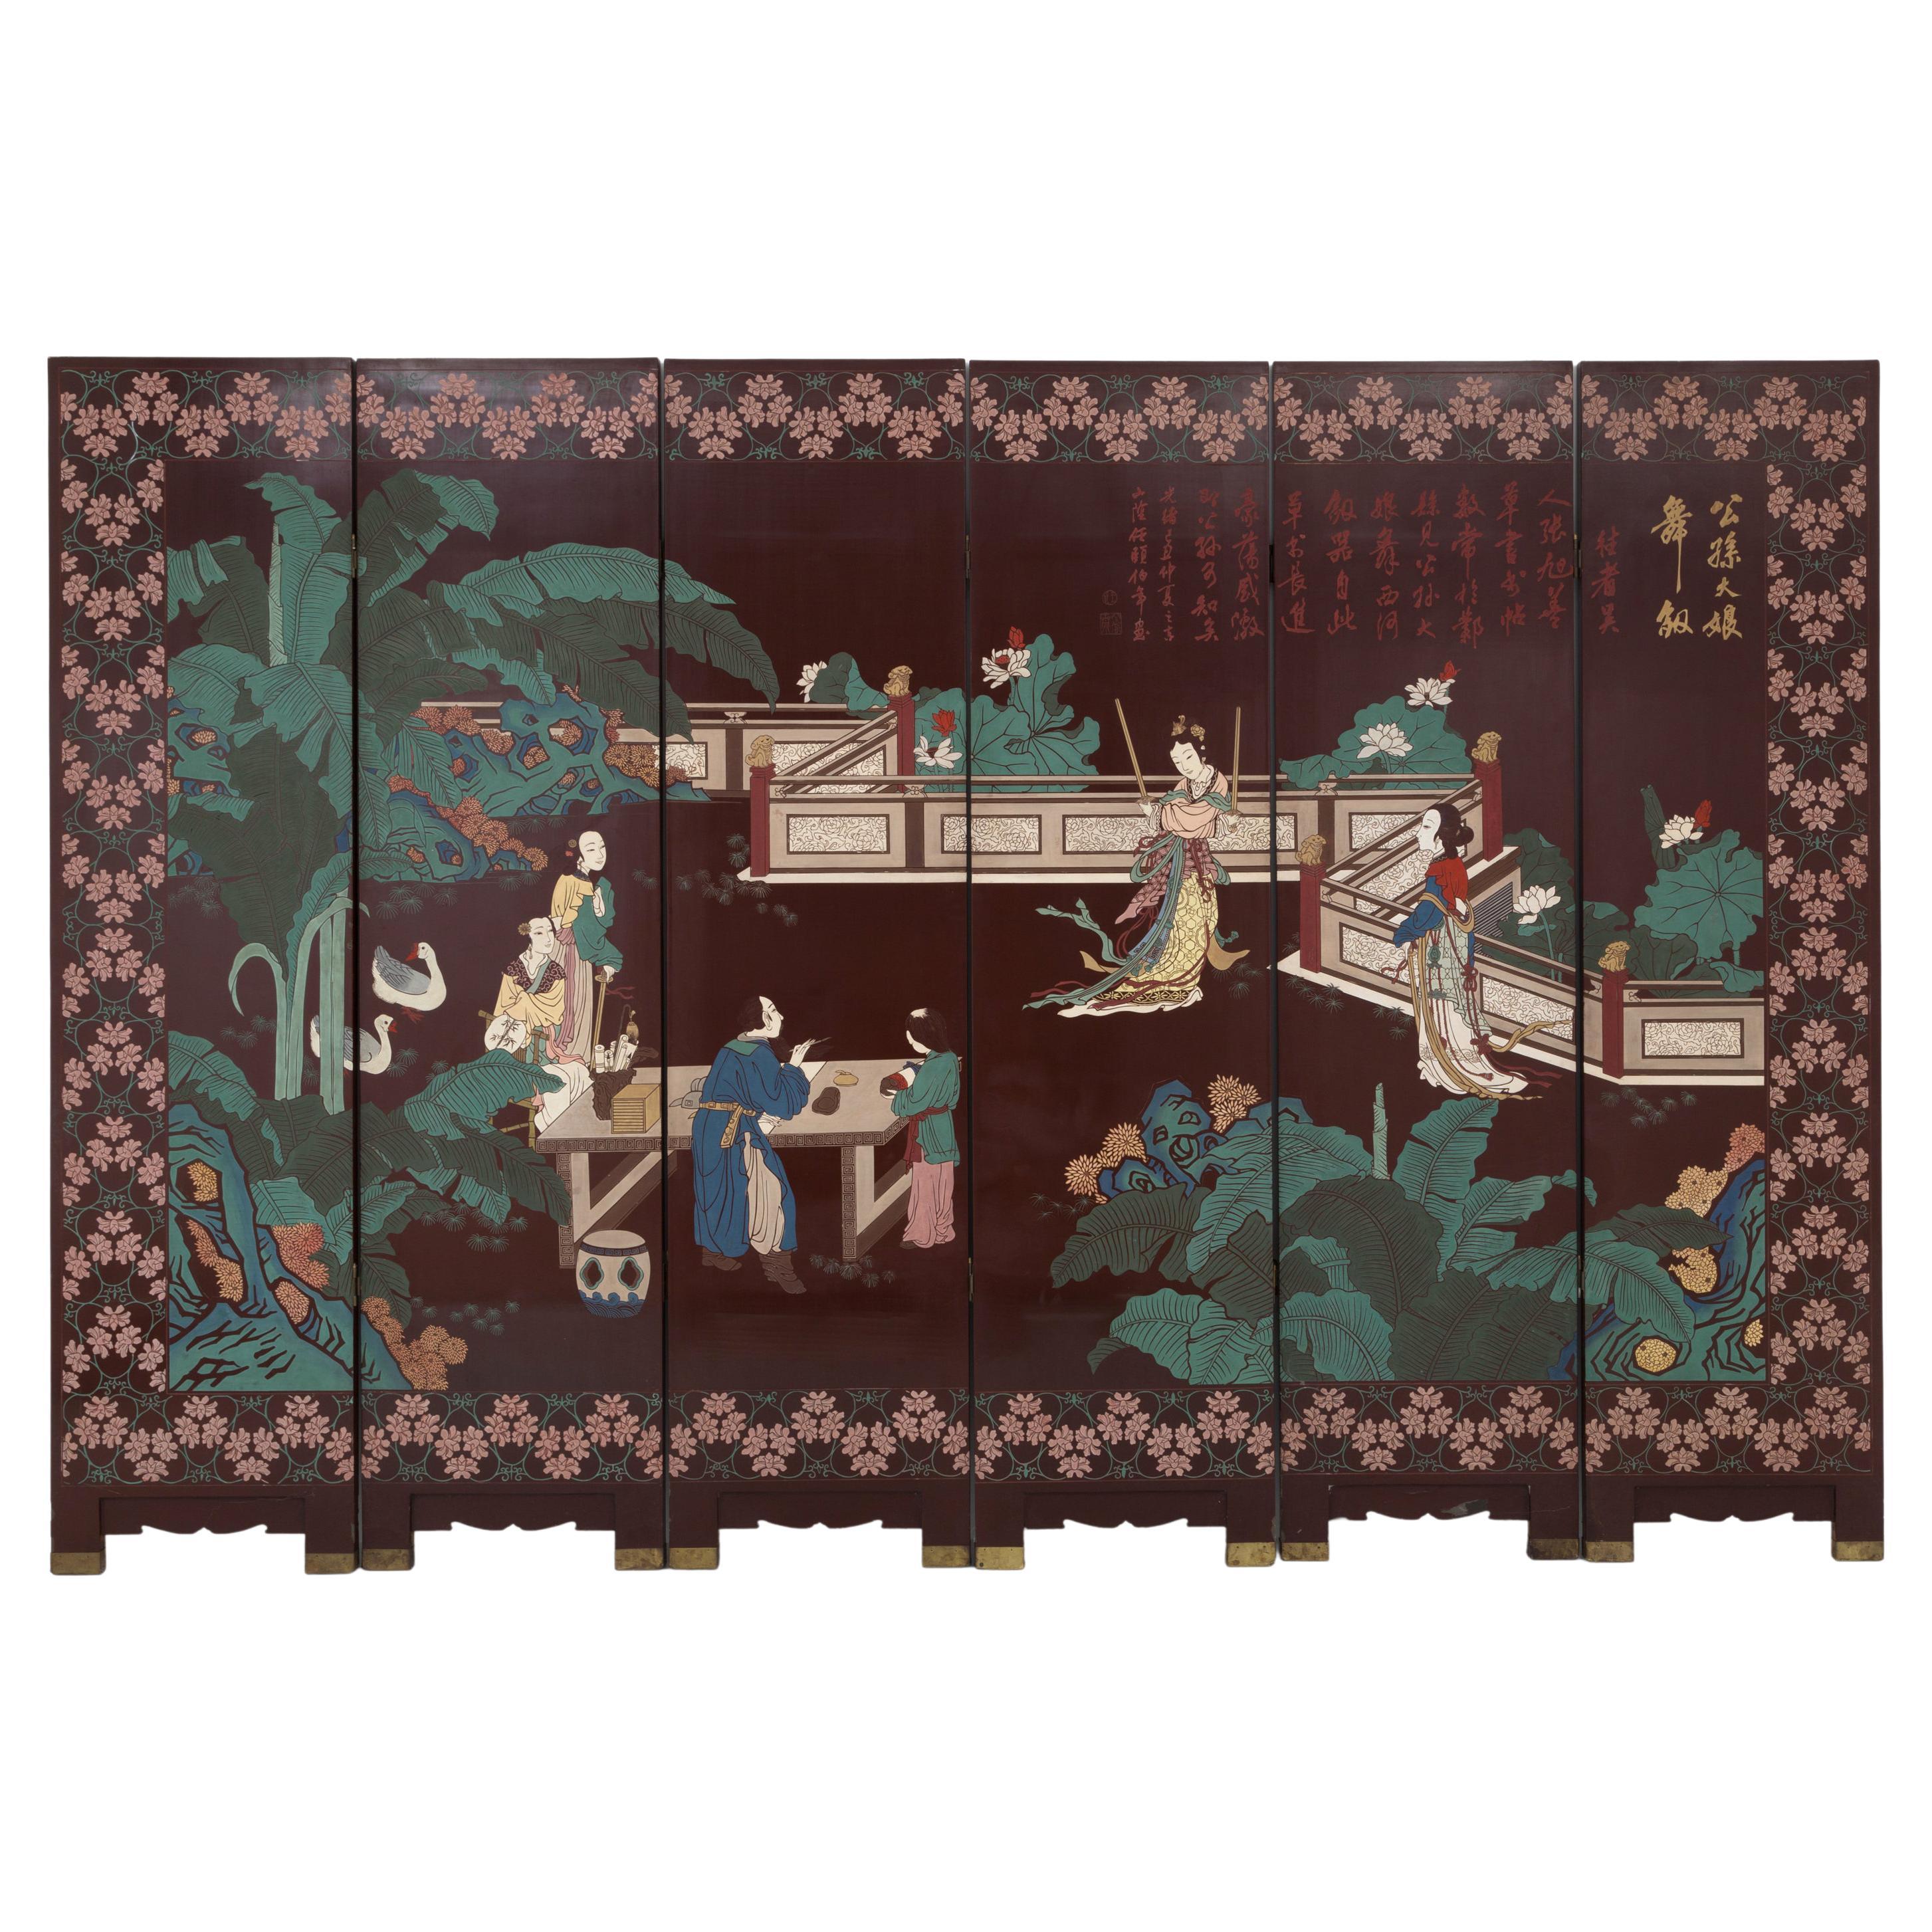 Chinesischer Holzschirm, der Szenen des orientalischen Lebens darstellt